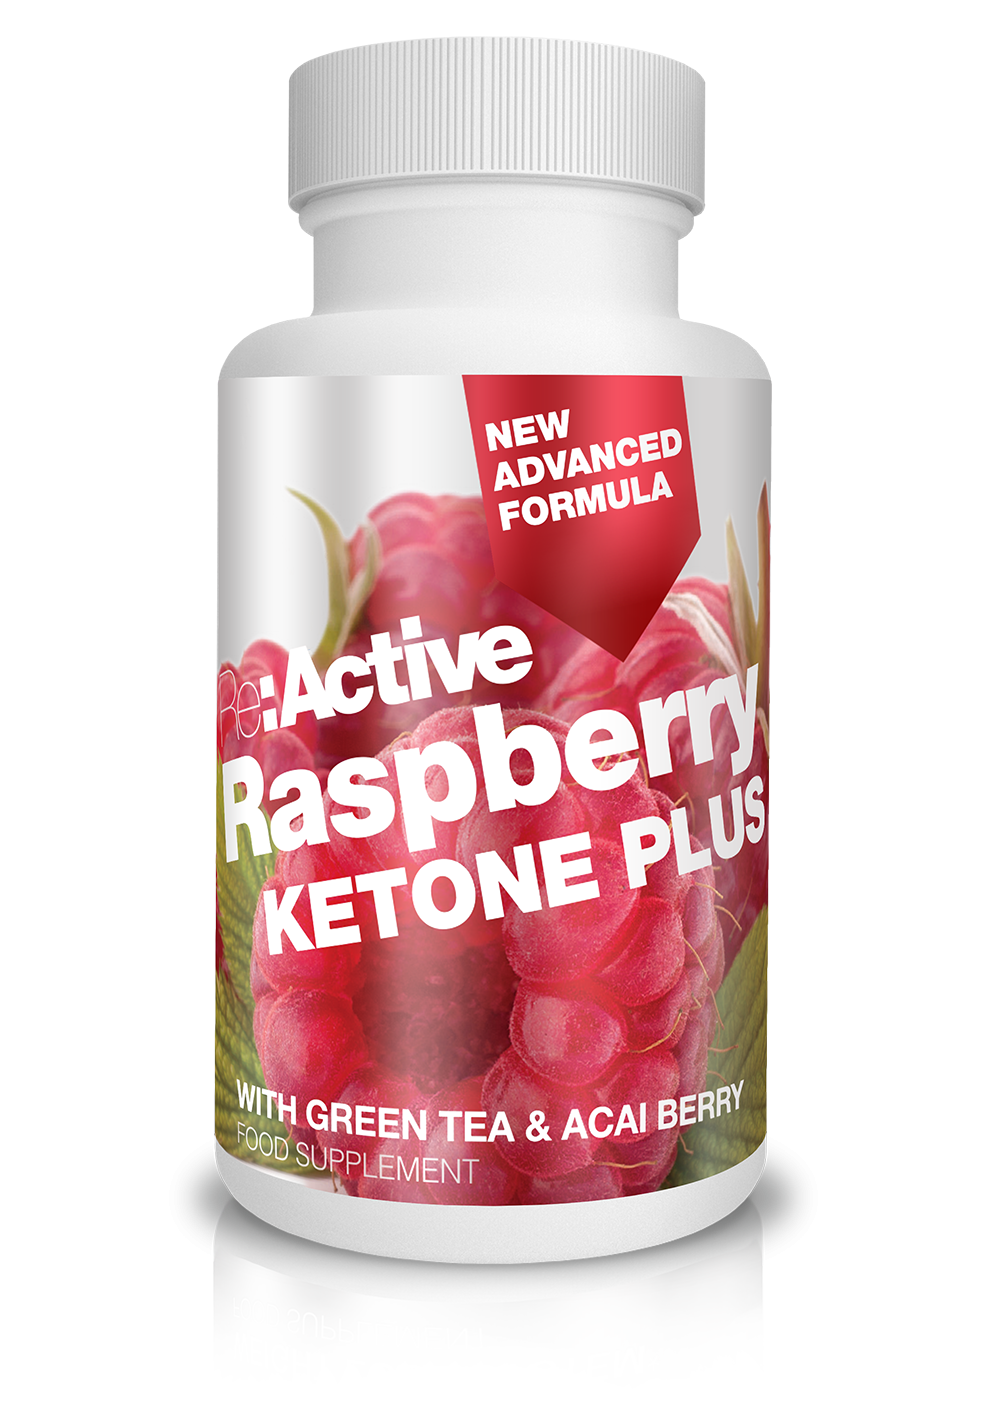 re:active raspberry ketone plus